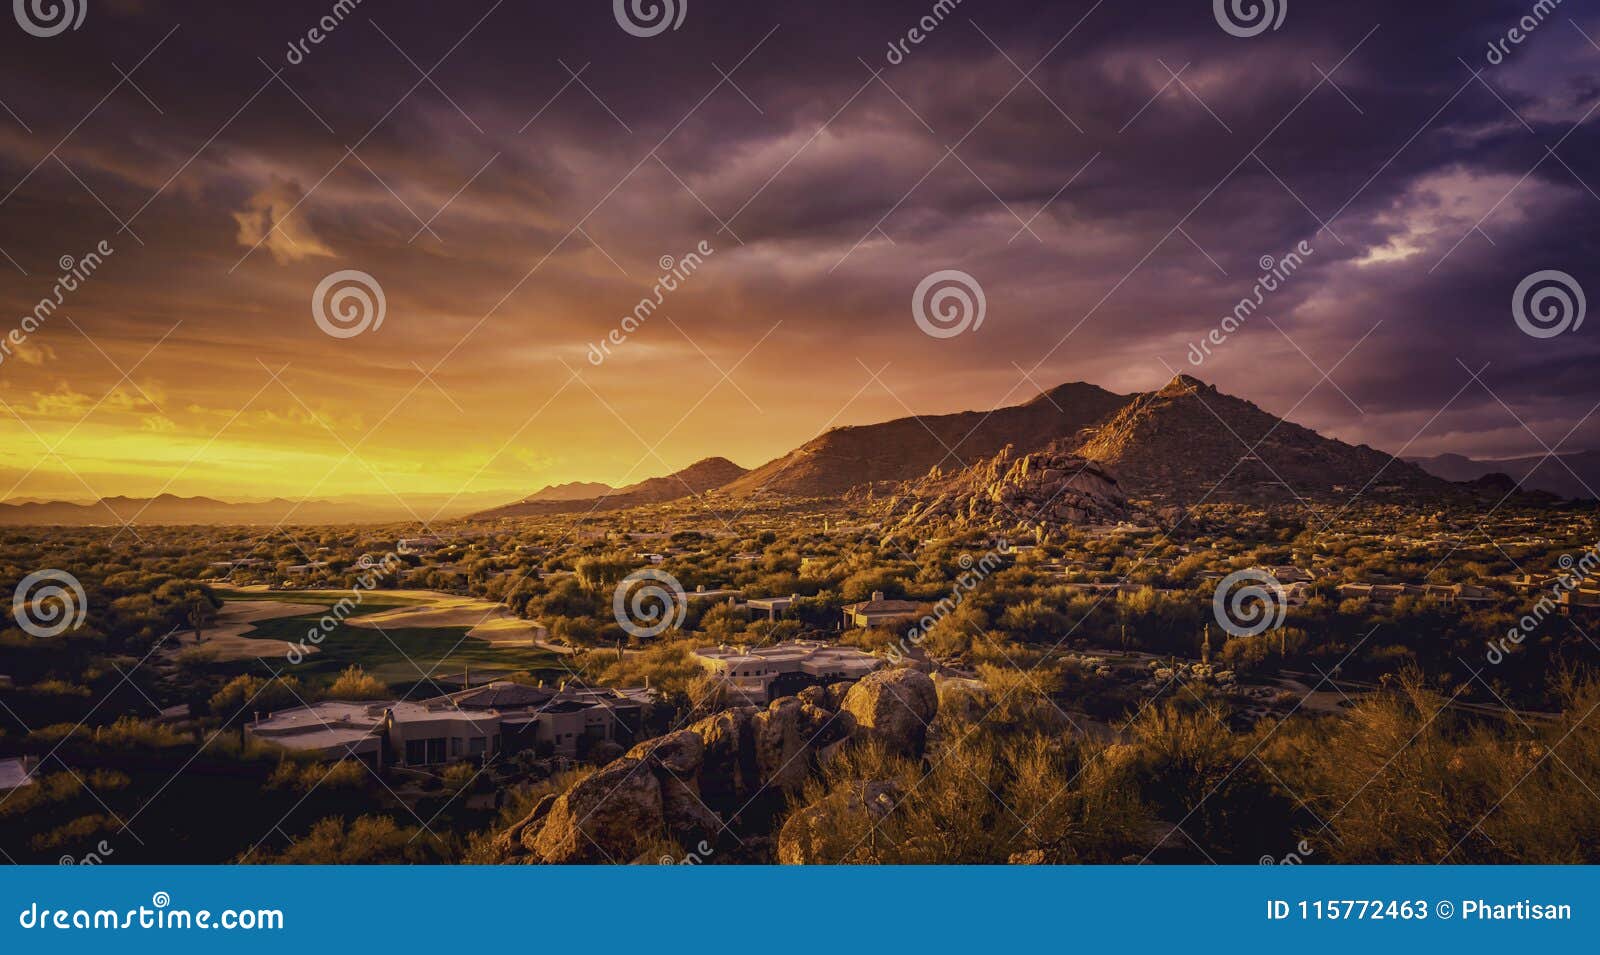 Scottsdale Arizona Desert Landscape,USA Stock Image - Image of states ...